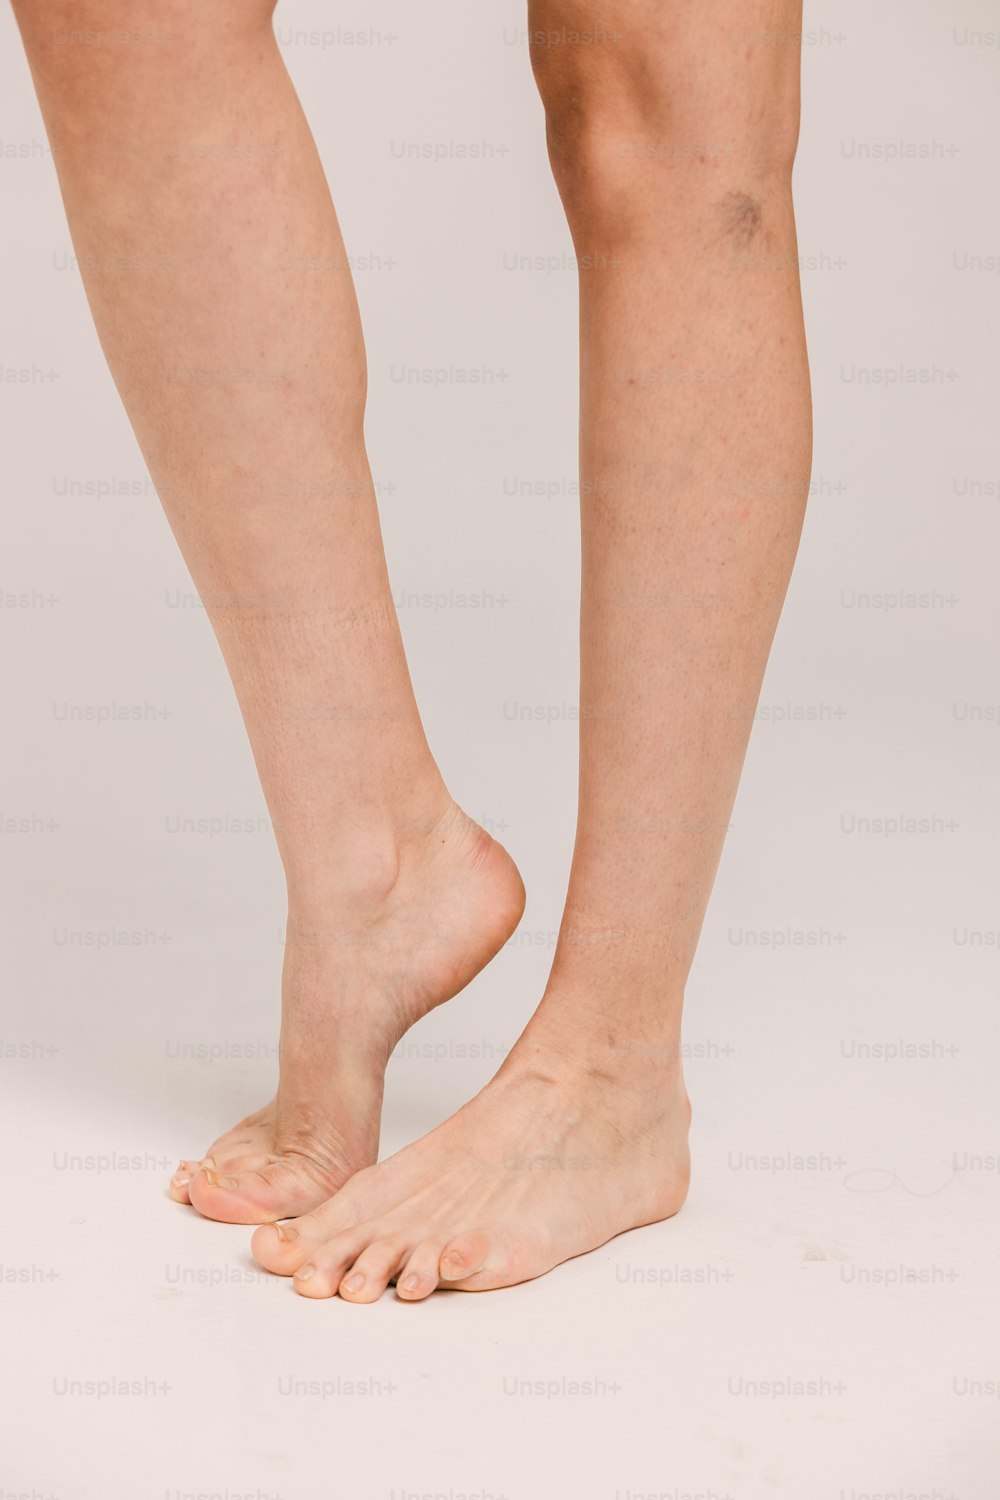 une personne debout sur une surface blanche avec ses pieds nus